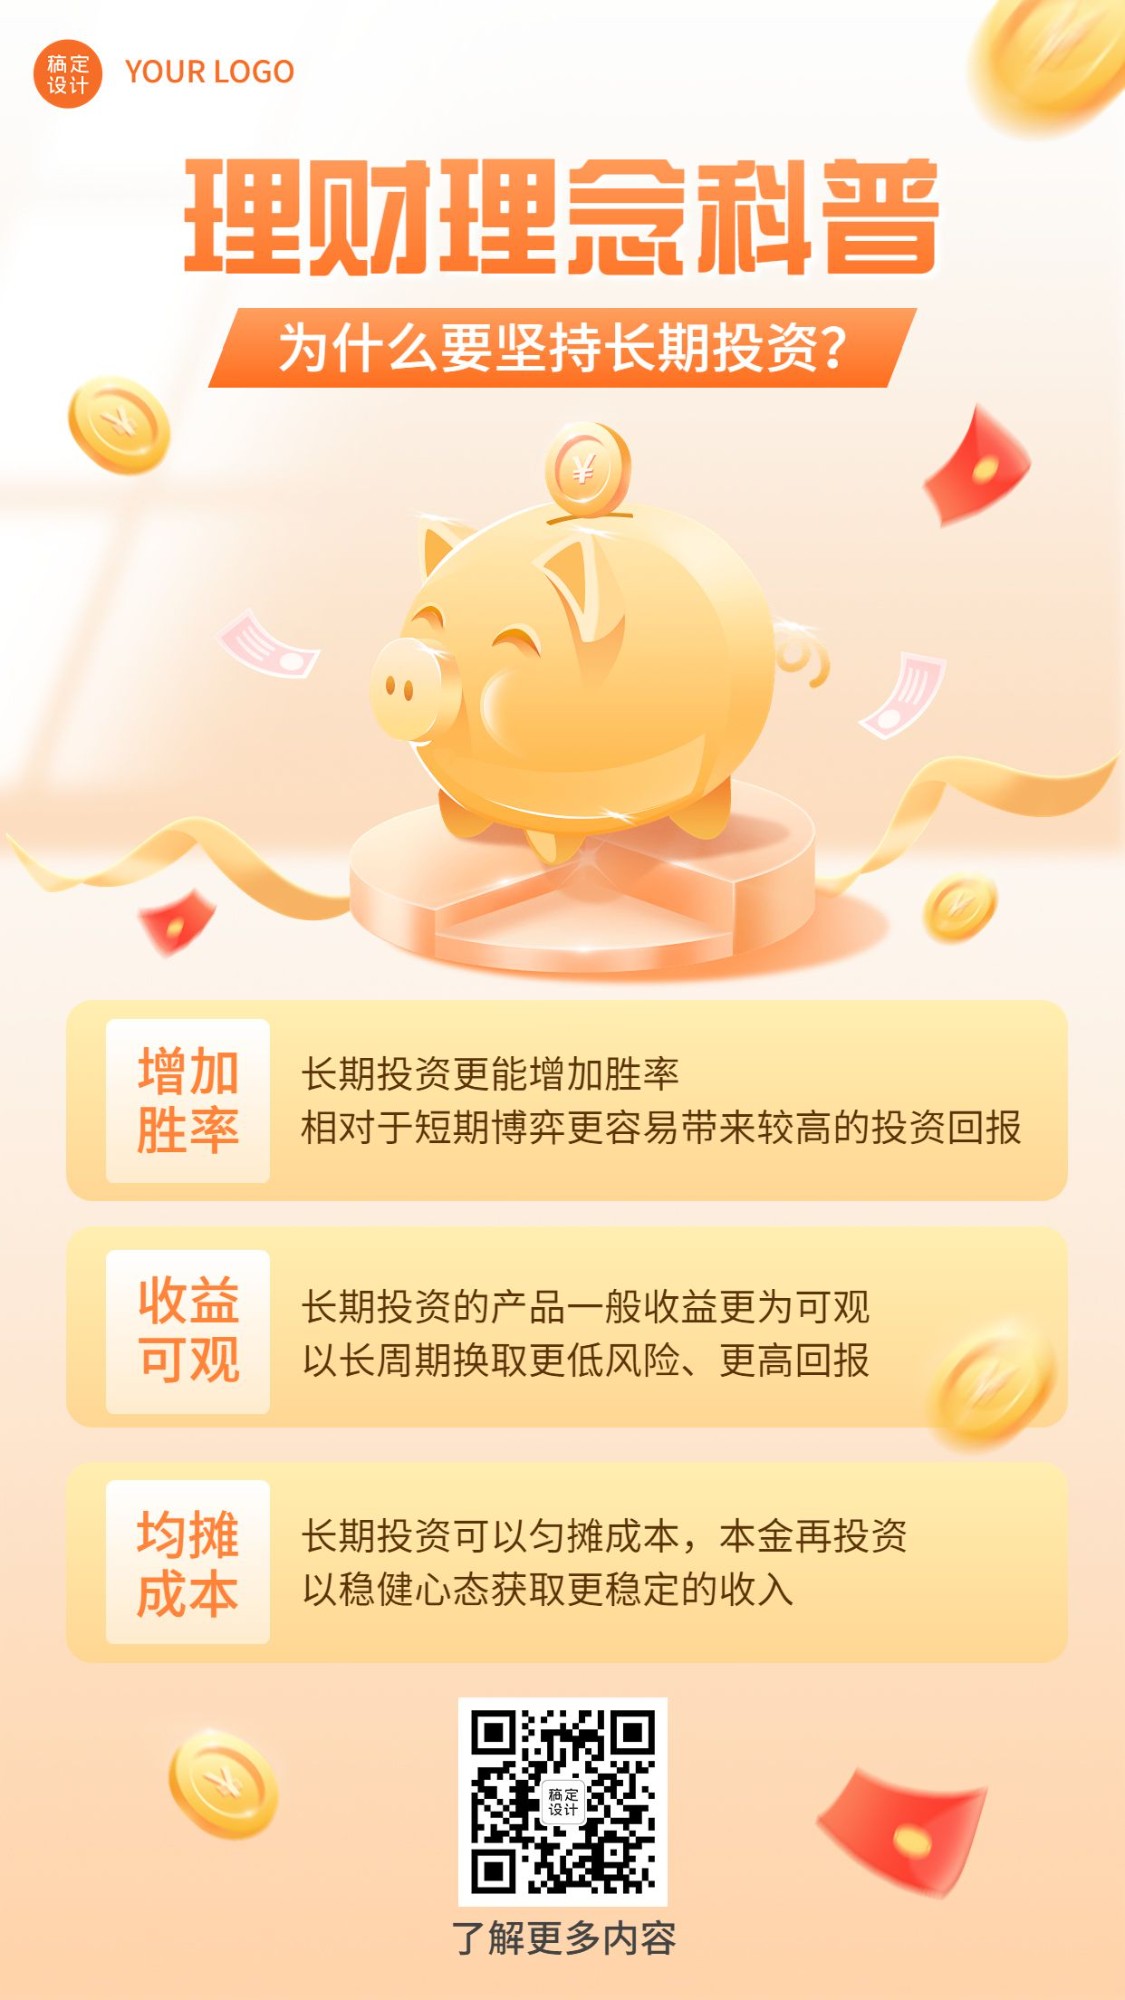 金融投资理财理念推广知识科普2.5D手机海报